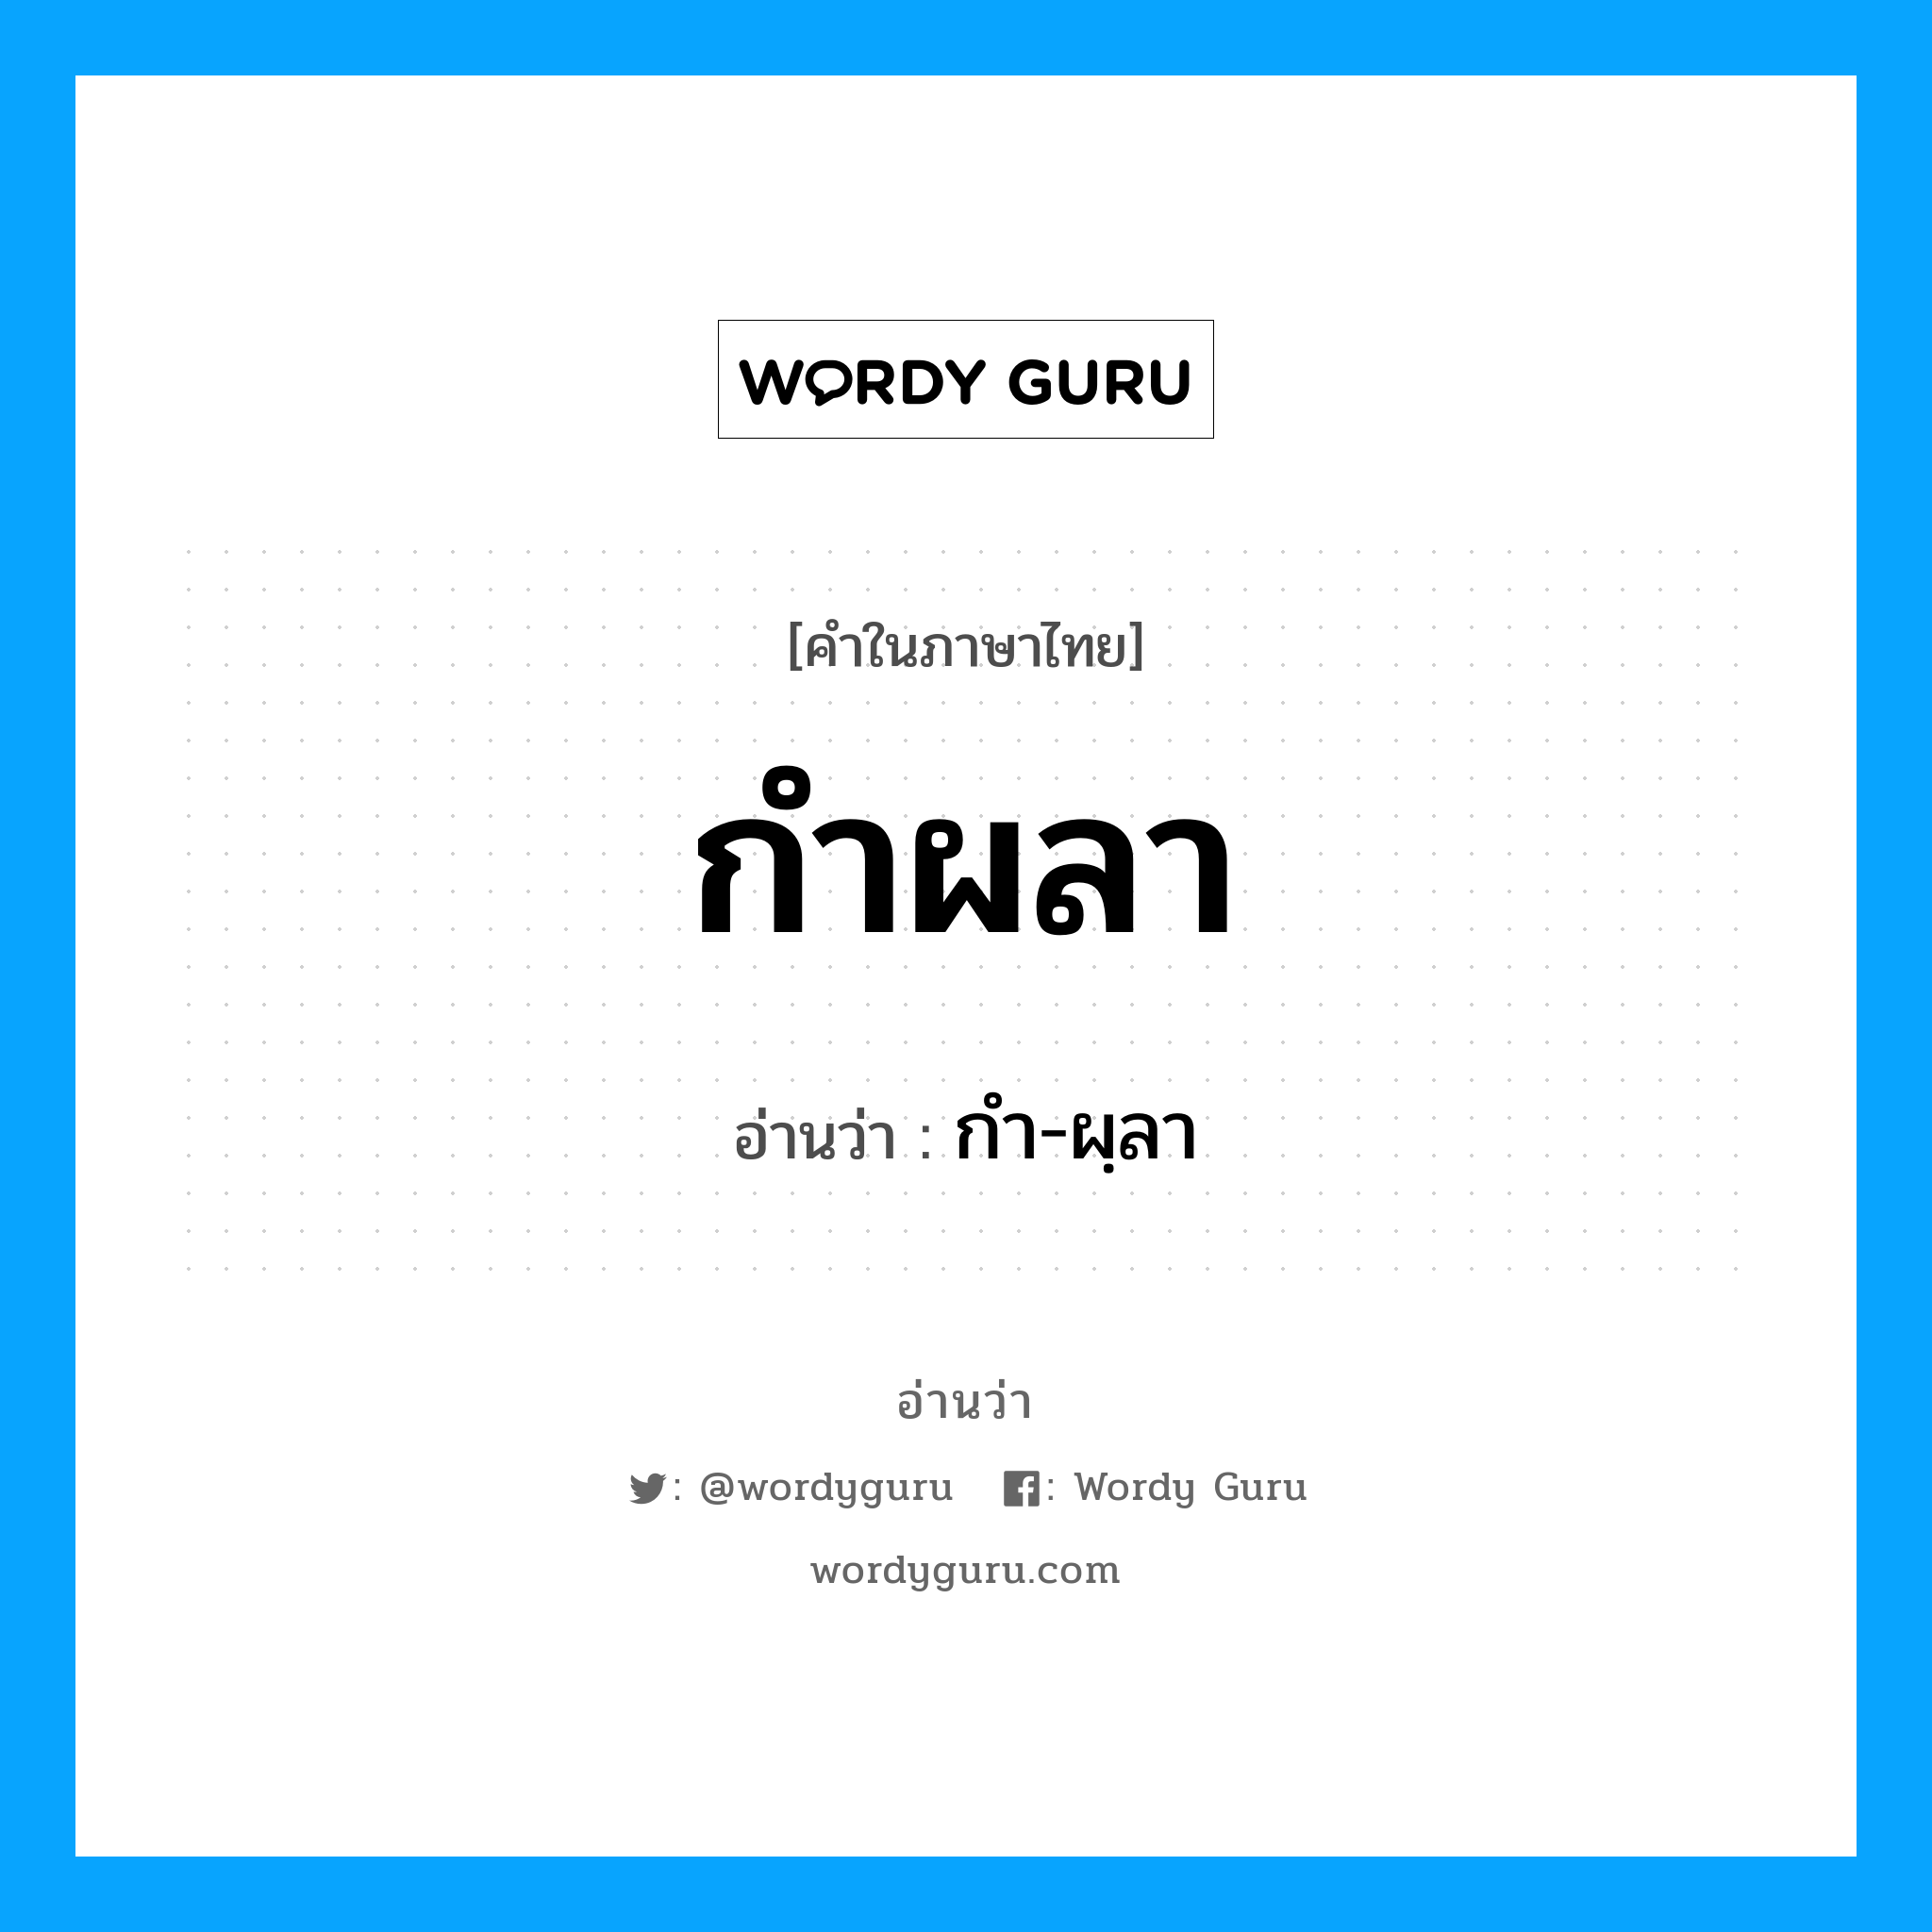 กำ-ผฺลา เป็นคำอ่านของคำไหน?, คำในภาษาไทย กำ-ผฺลา อ่านว่า กำผลา